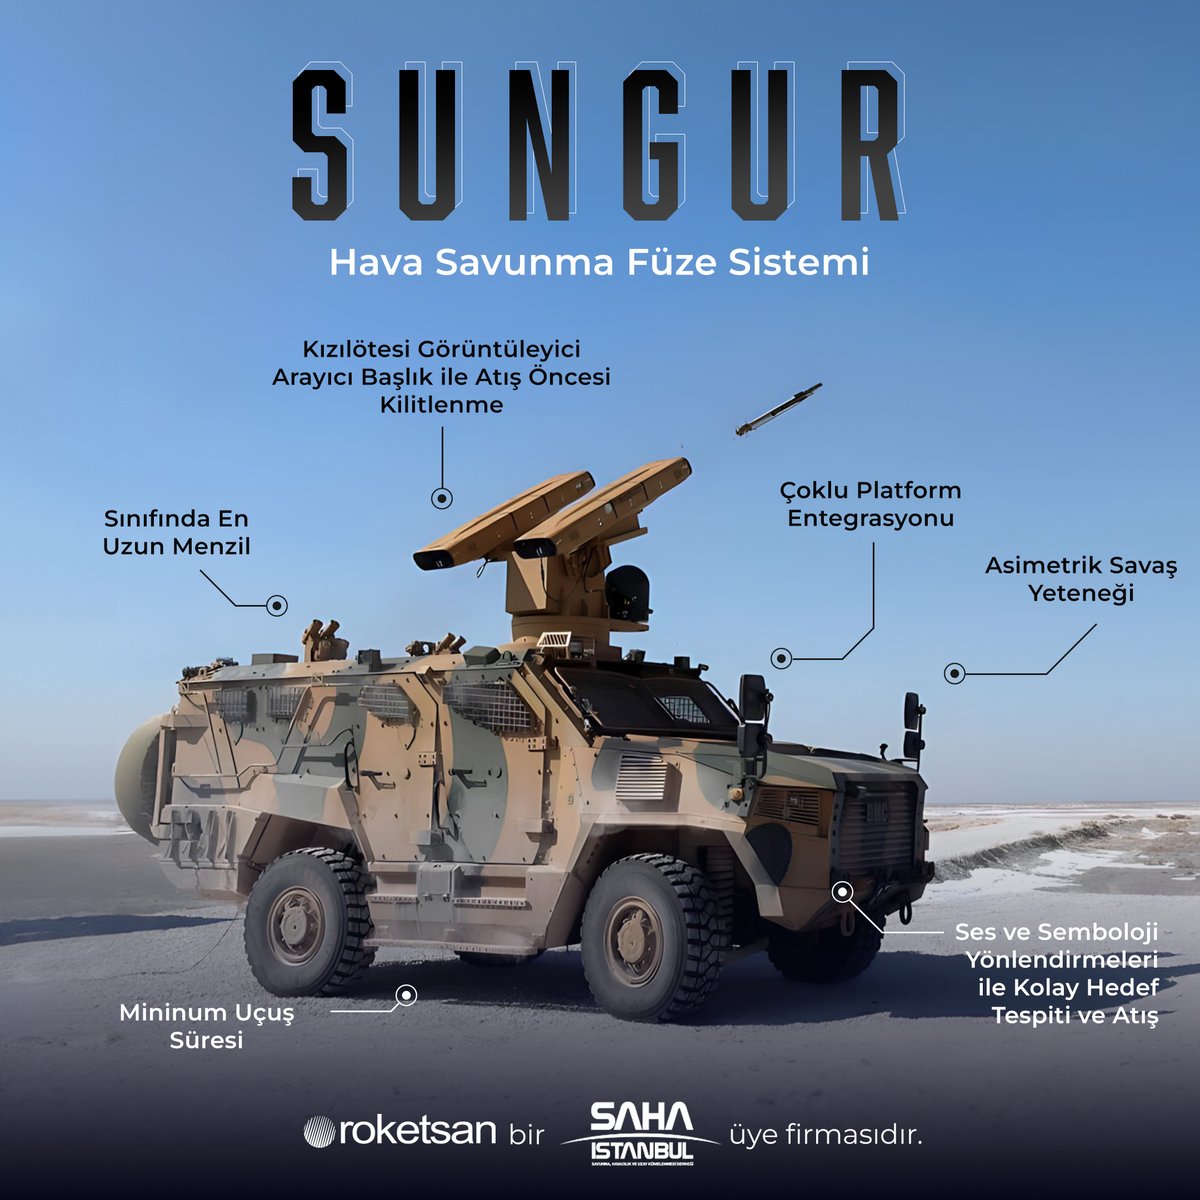 Roketsan tarafından geliştirilen: SUNGUR 💢 Çoklu platform entegrasyonu 💢 Asimetrik savaş yeteneği 💢 Sınıfında en uzun menzil @roketsan